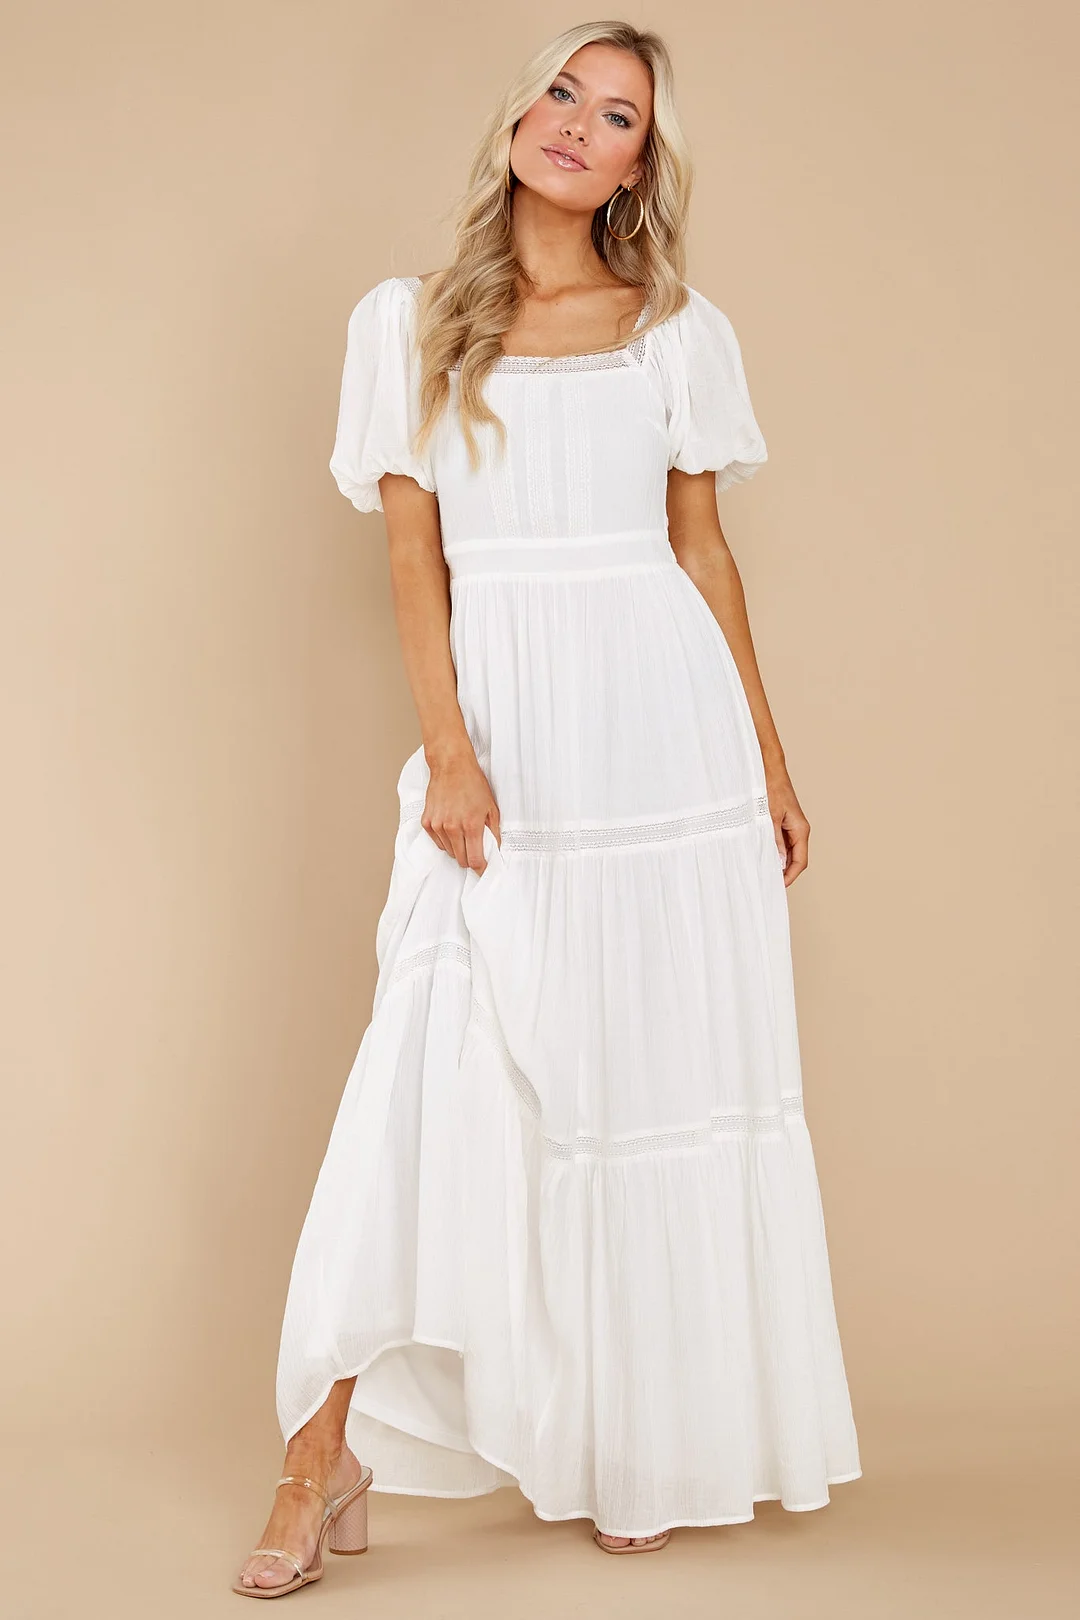 Recognize Love White Maxi Dress